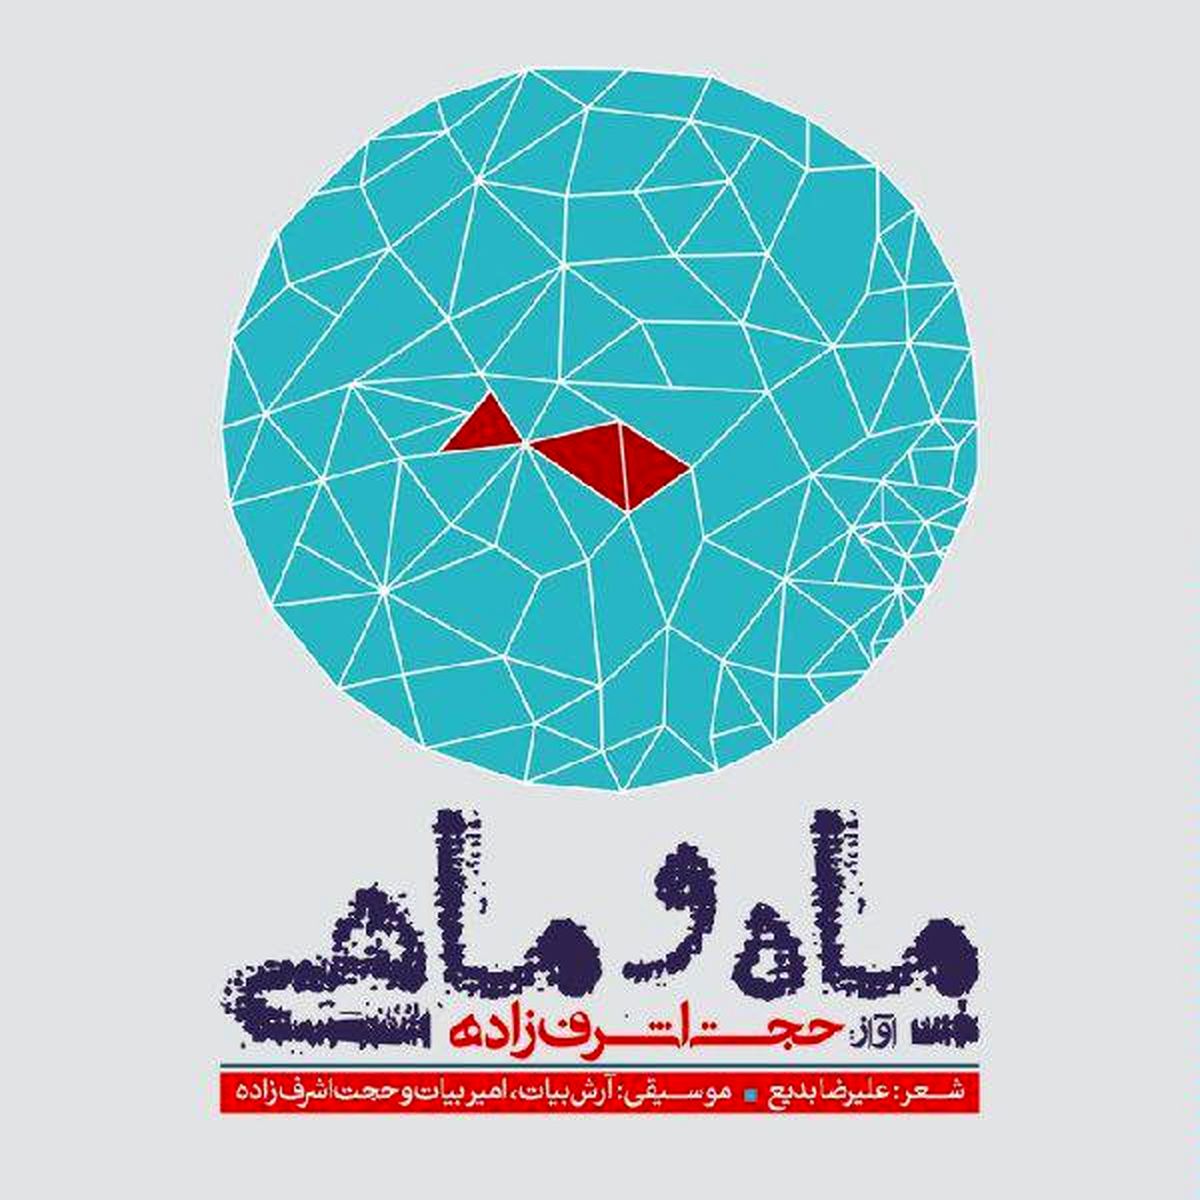 مروری بر آلبوم "ماه و ماهی" حجت اشرف‌زاده